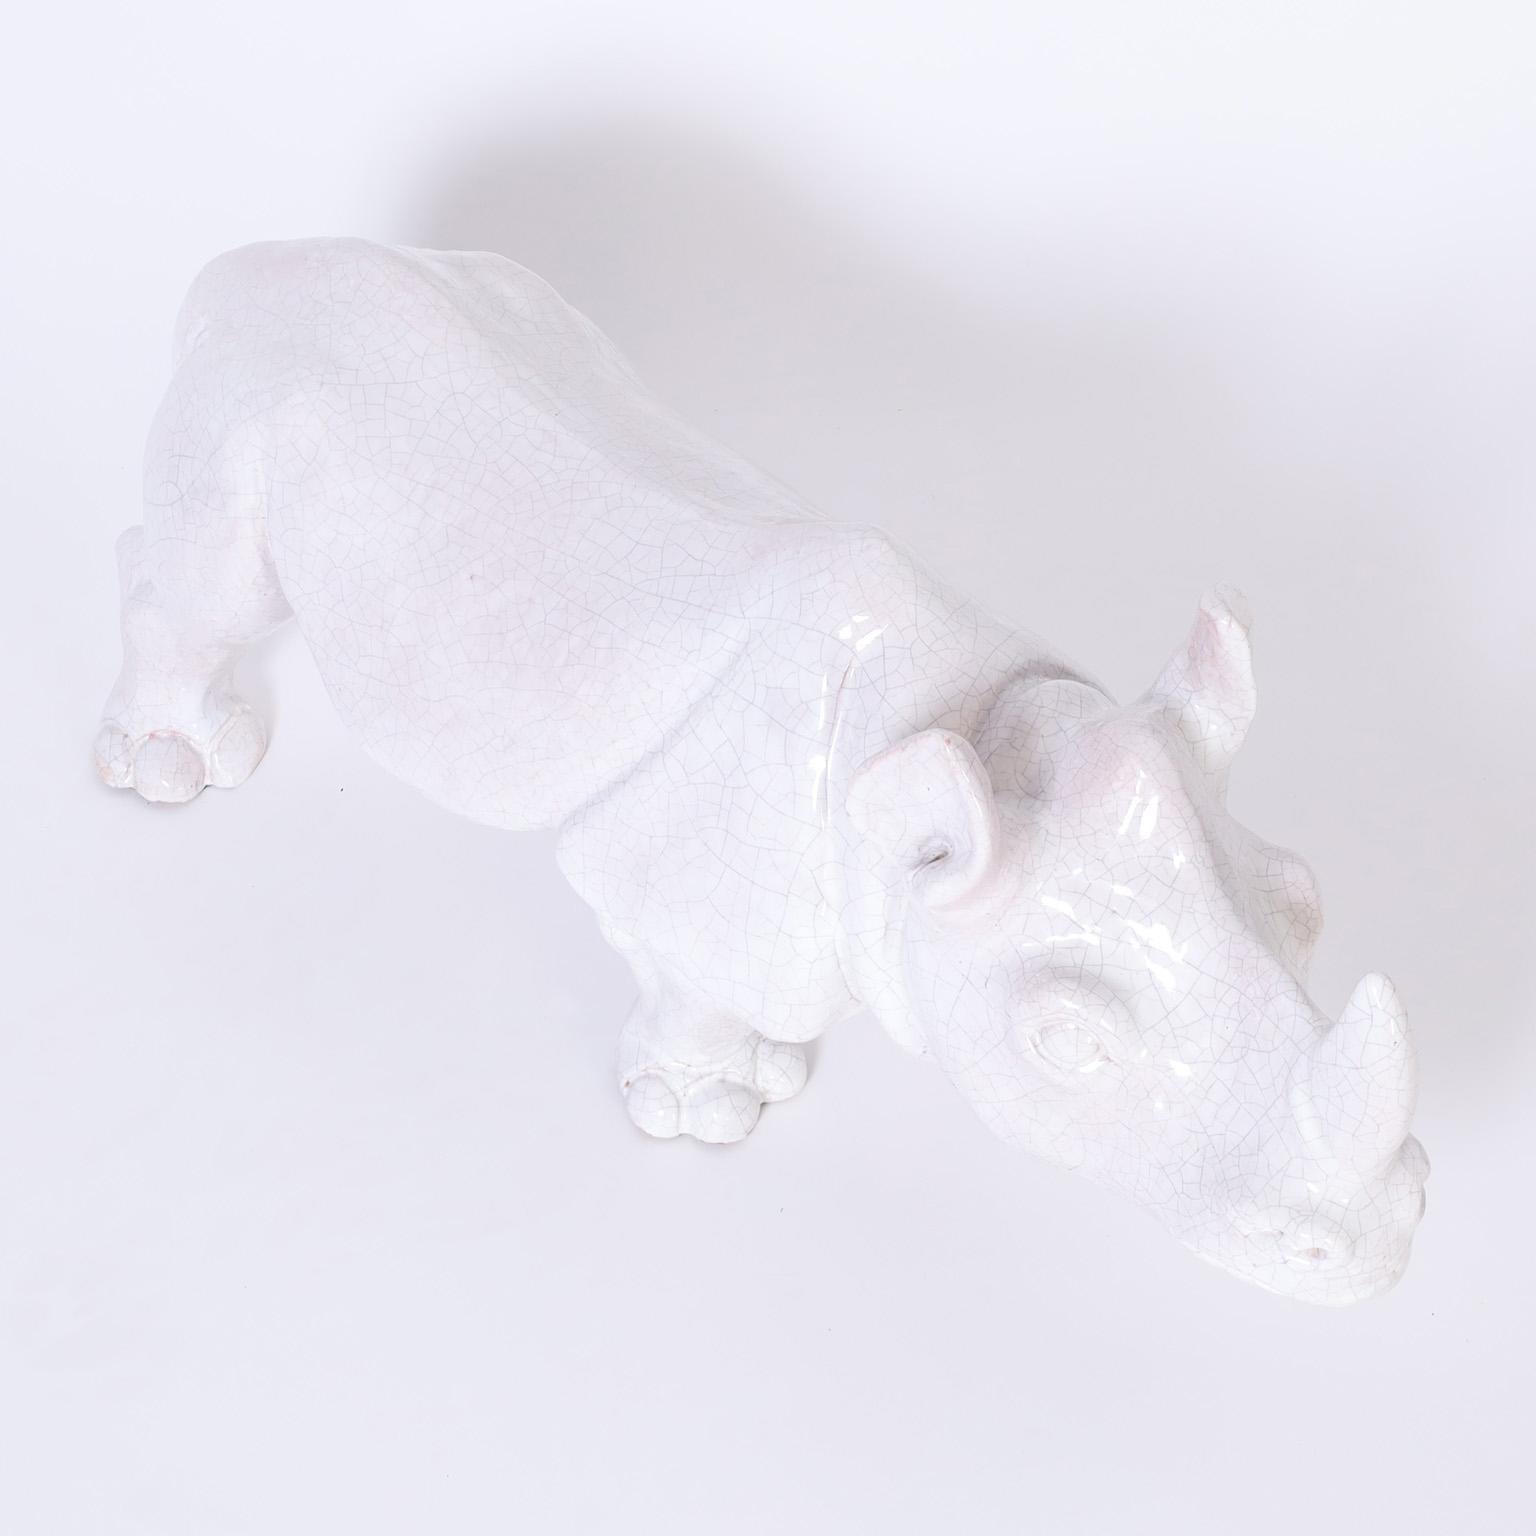 Sculpture de rhinocéros du milieu du siècle, réalisée en terre cuite avec une glaçure blanche craquelée.